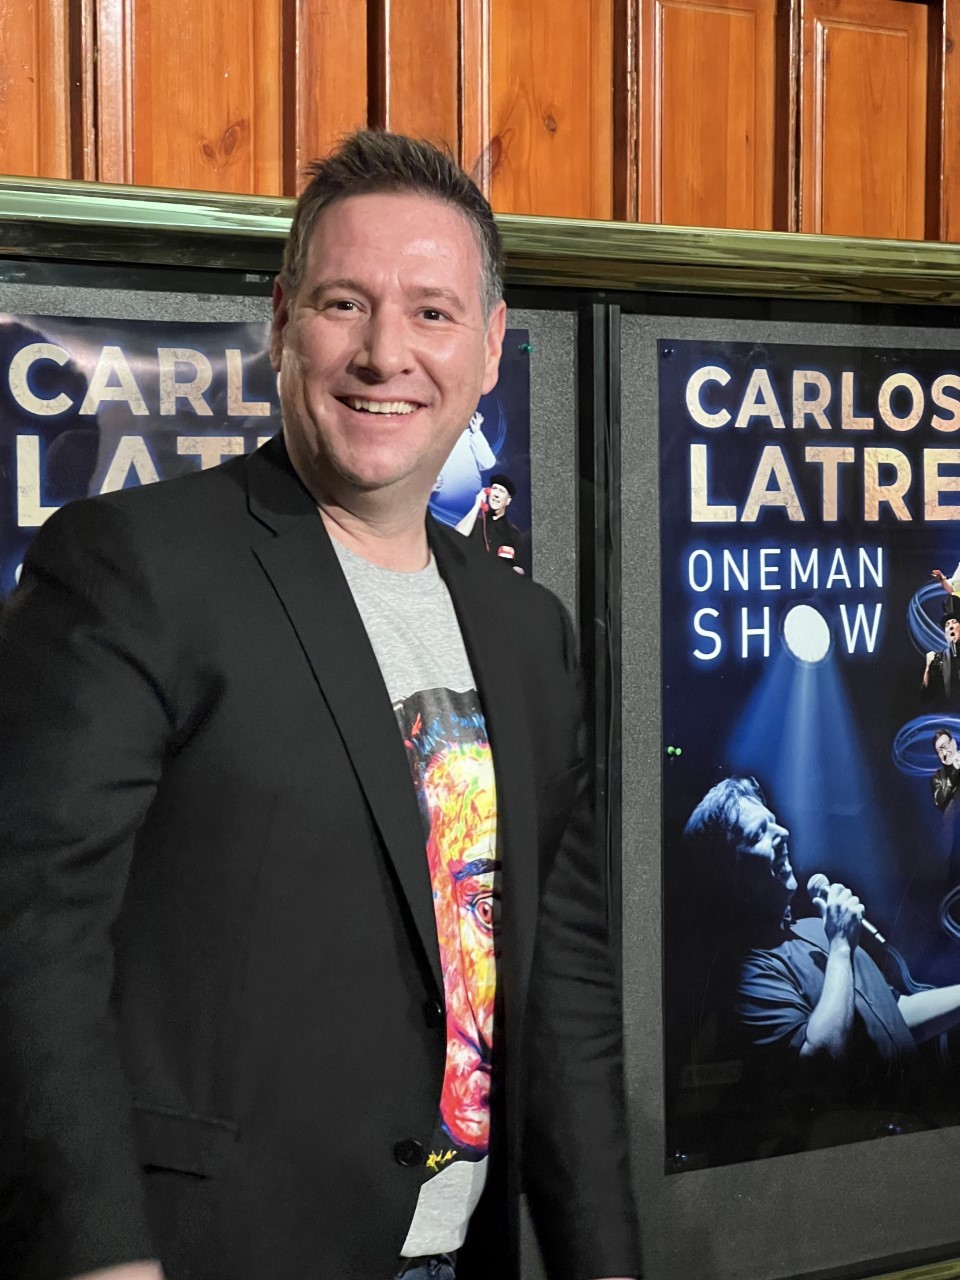 Carlos Latre presenta su nuevo espectáculo “One Man Show” en Valencia